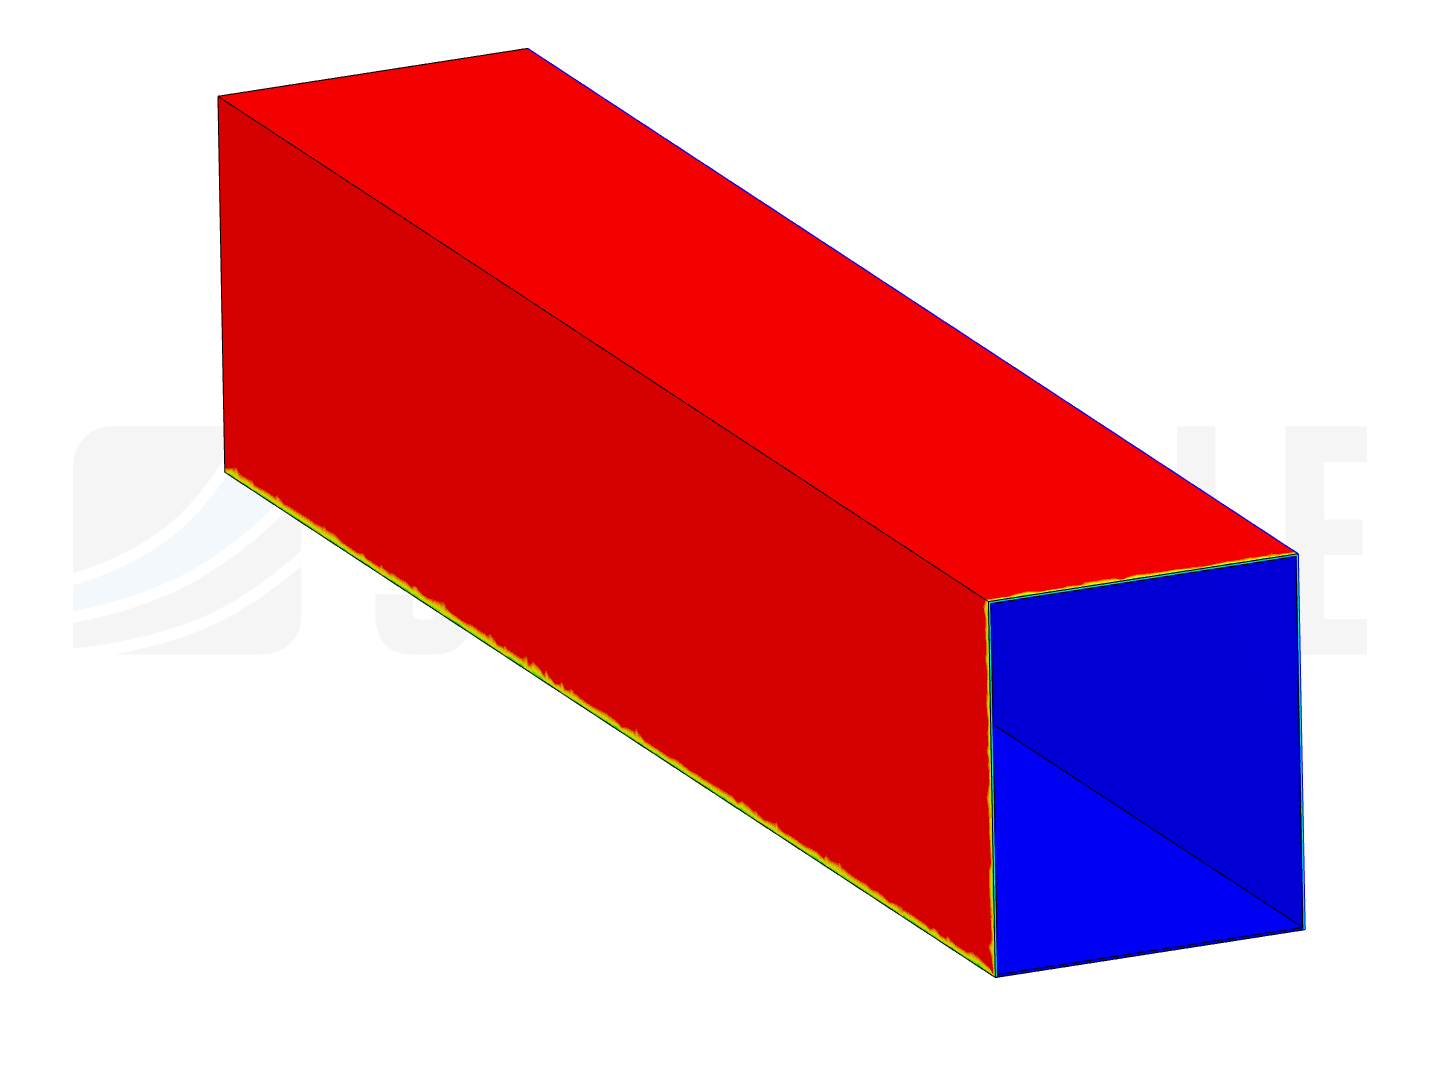 Wall thermal simulation image